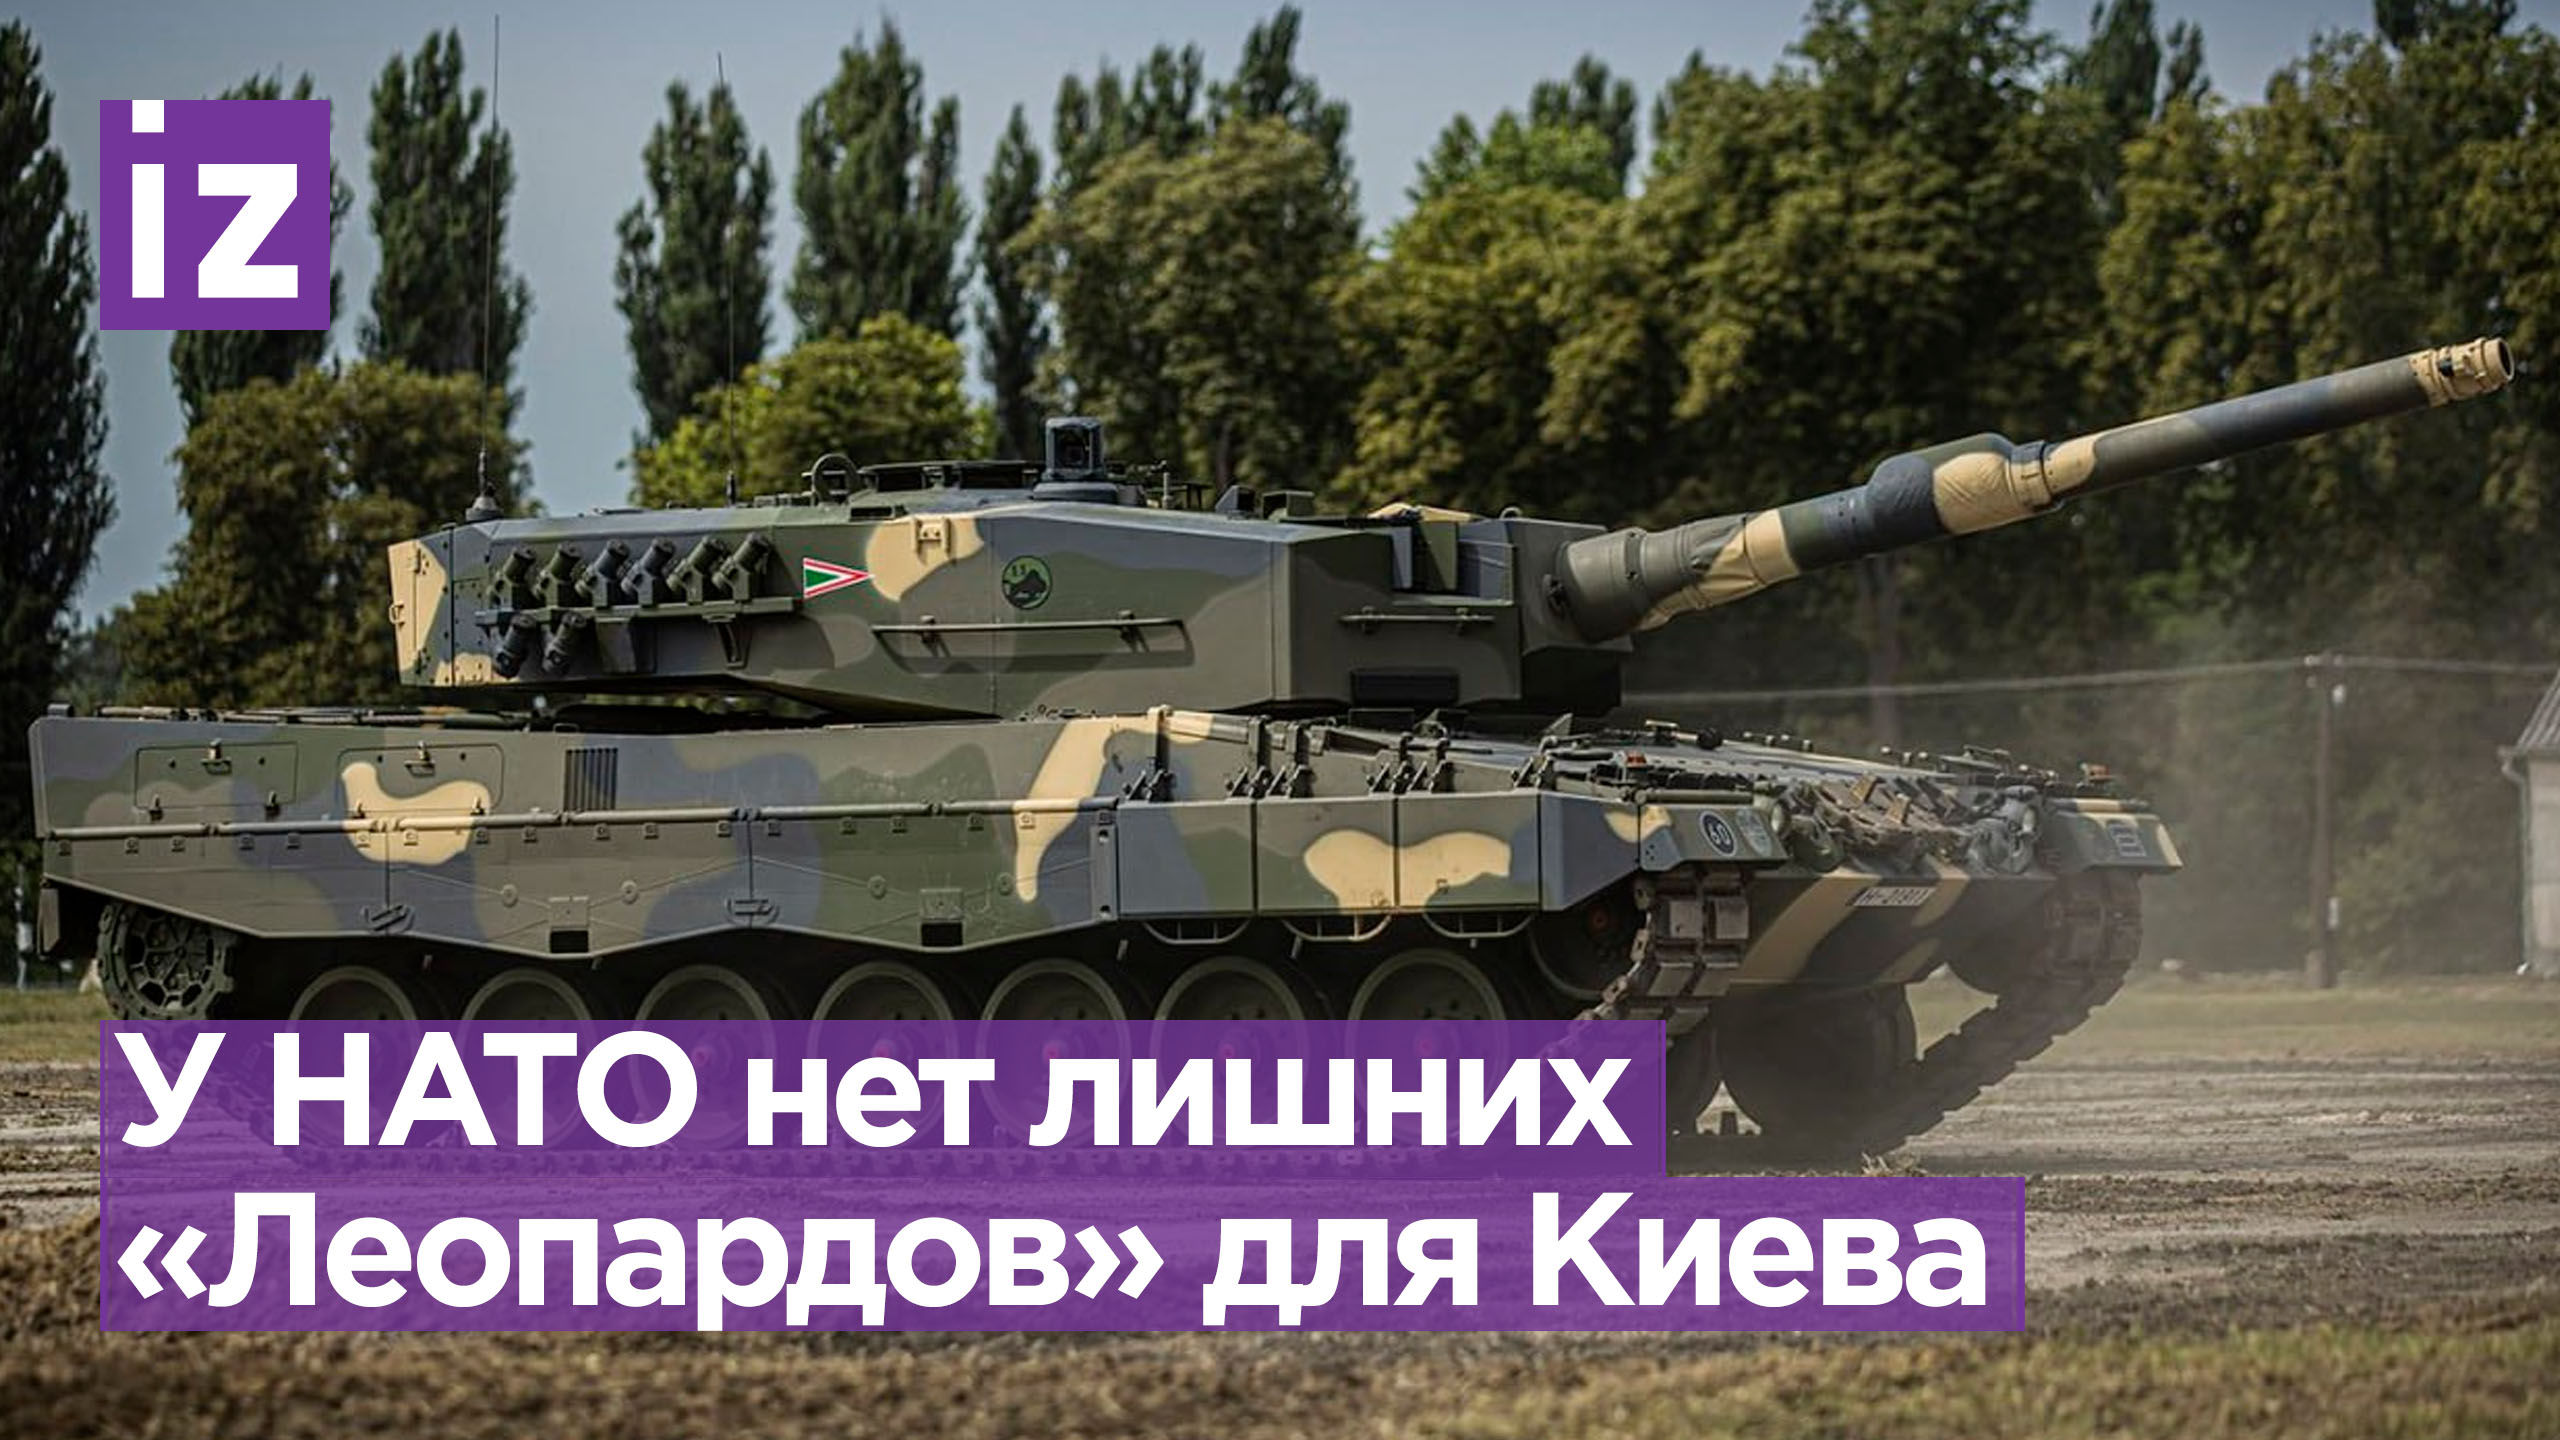 НАТО не сможет поставить Киеву больше танков Leopard, чем было обещано / Известия